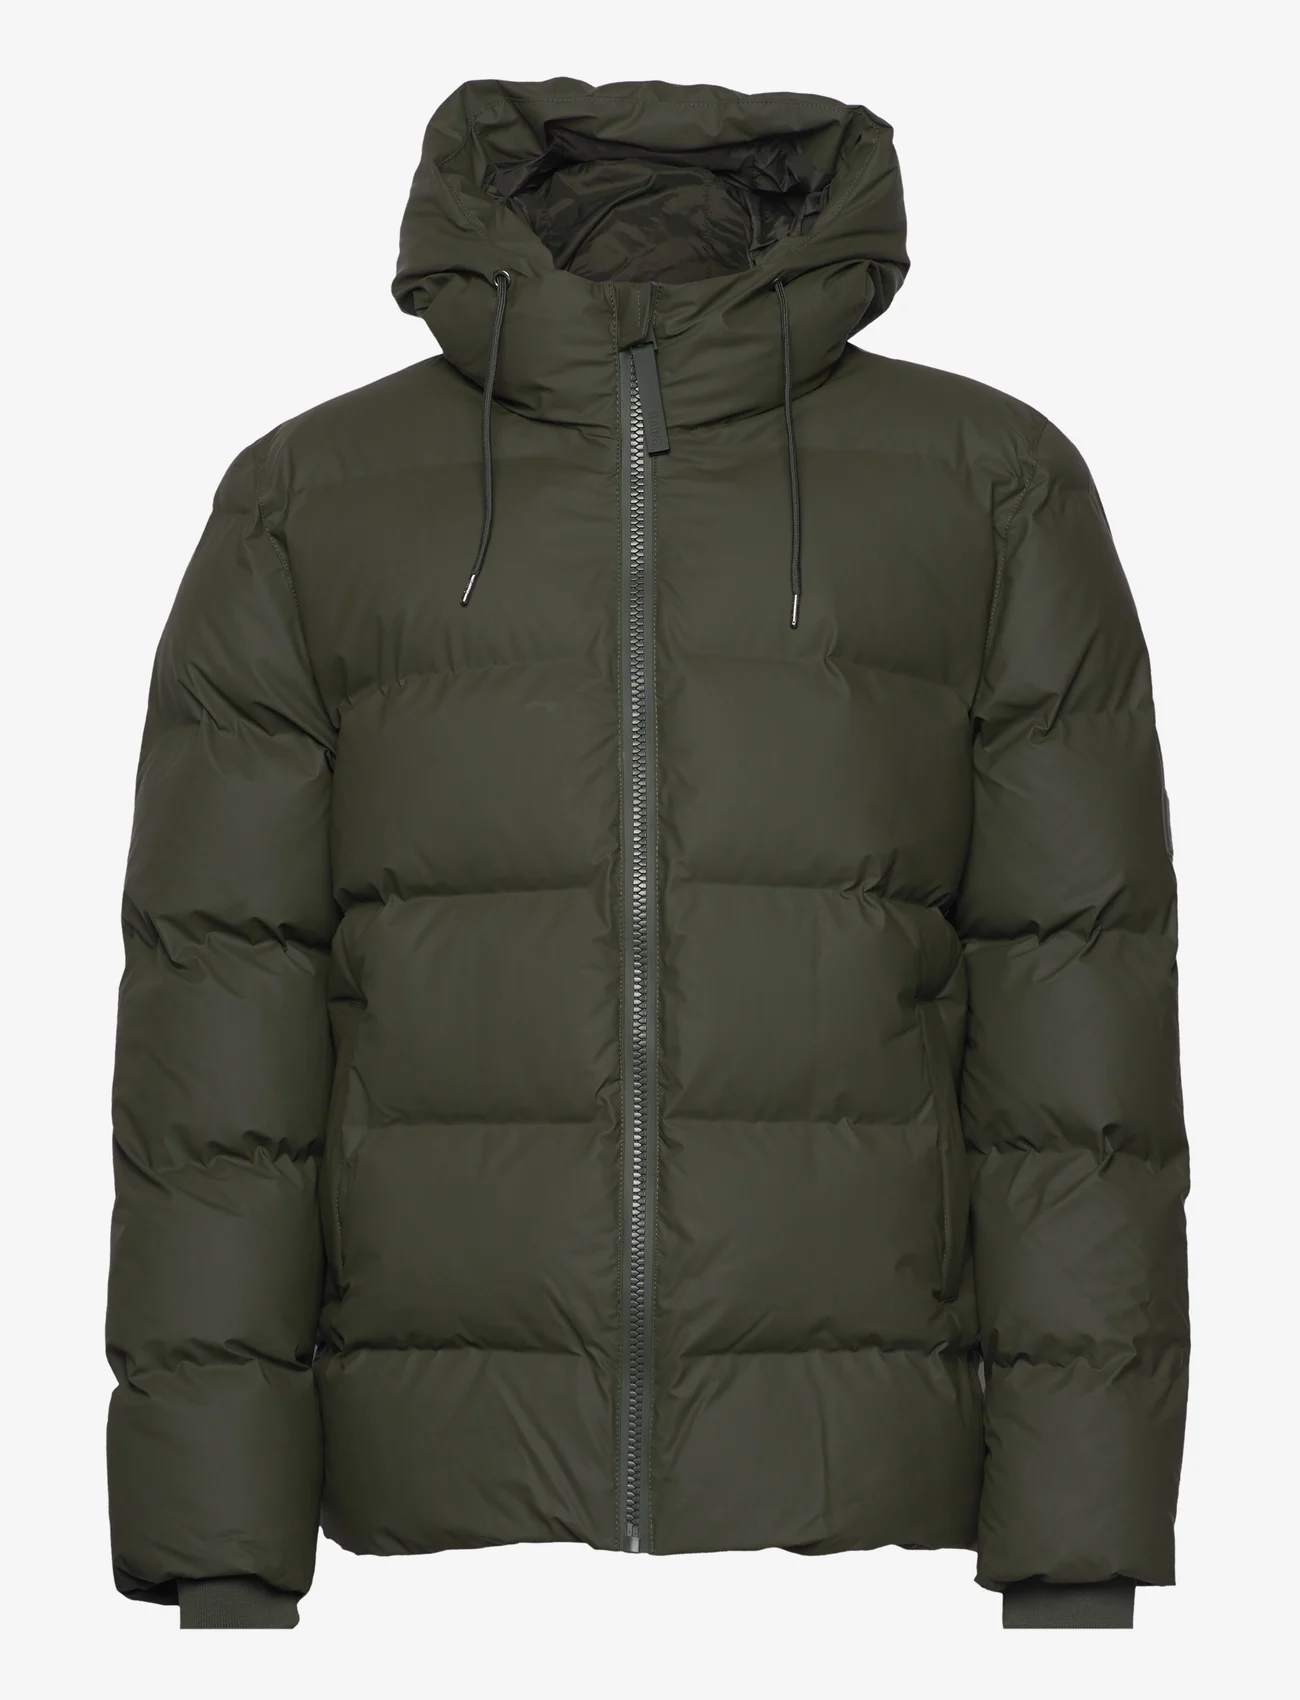 Rains - Alta Puffer Jacket W3T3 - winterjassen - green - 0